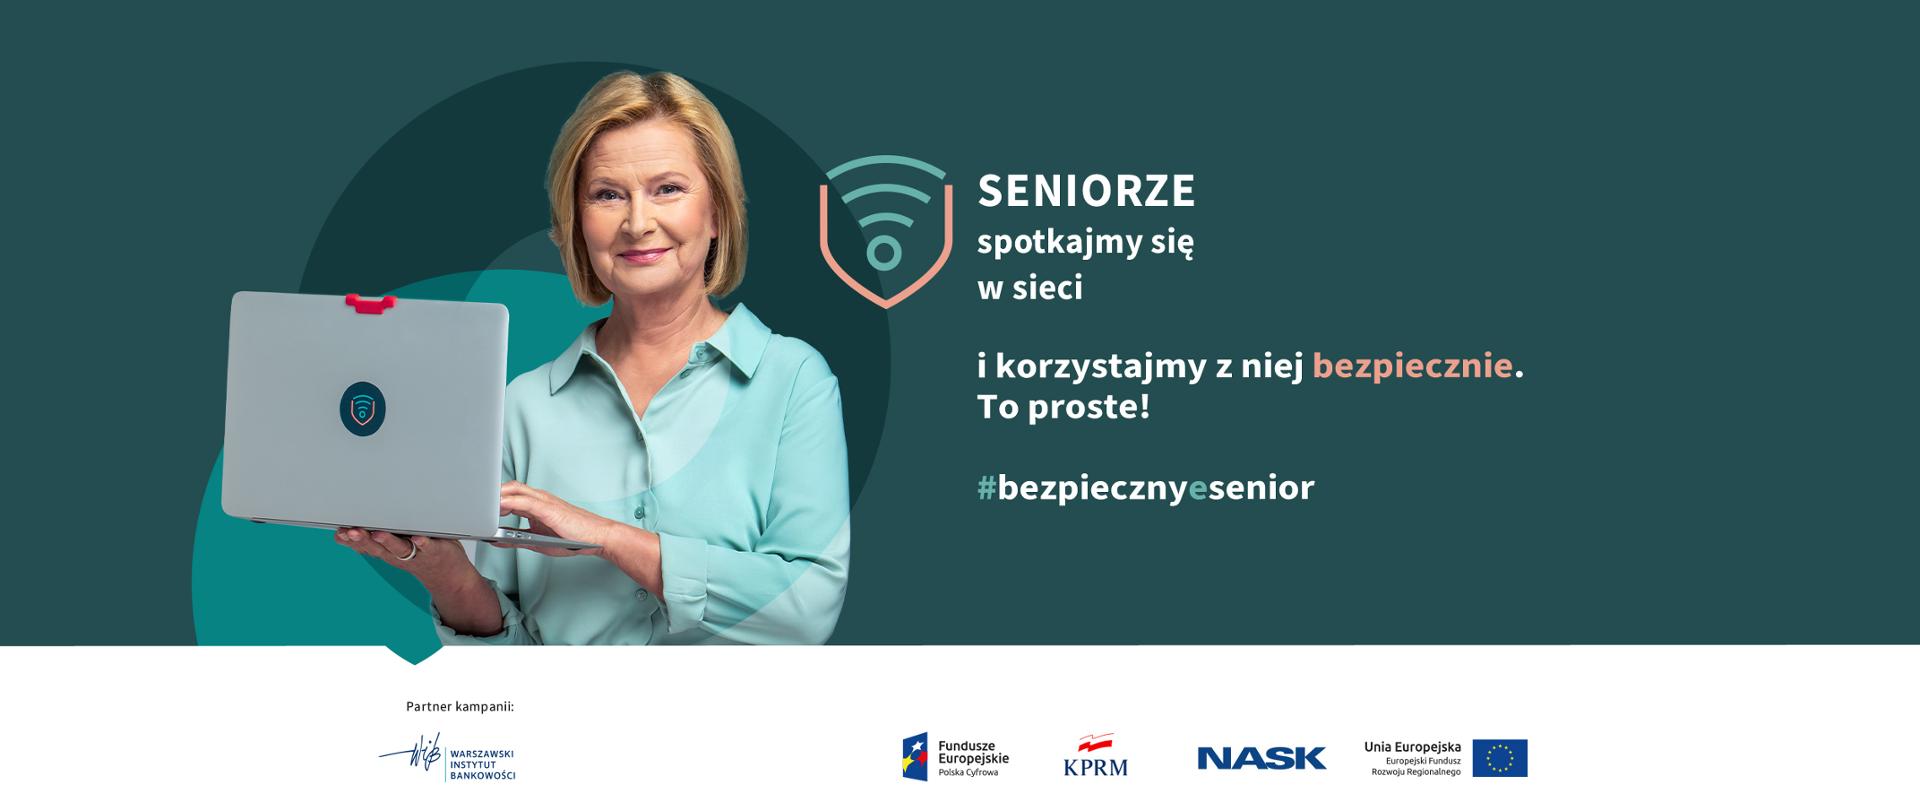 Grafika na ciemnozielonym tle. Z lewej strony trzymająca w rękach laptopa Barbara Bursztynowicz. Z prawej strony tekst "Seniorze, spotkajmy się w sieci i korzystajmy z niej bezpiecznie. To proste! #bezpiecznyesenior 